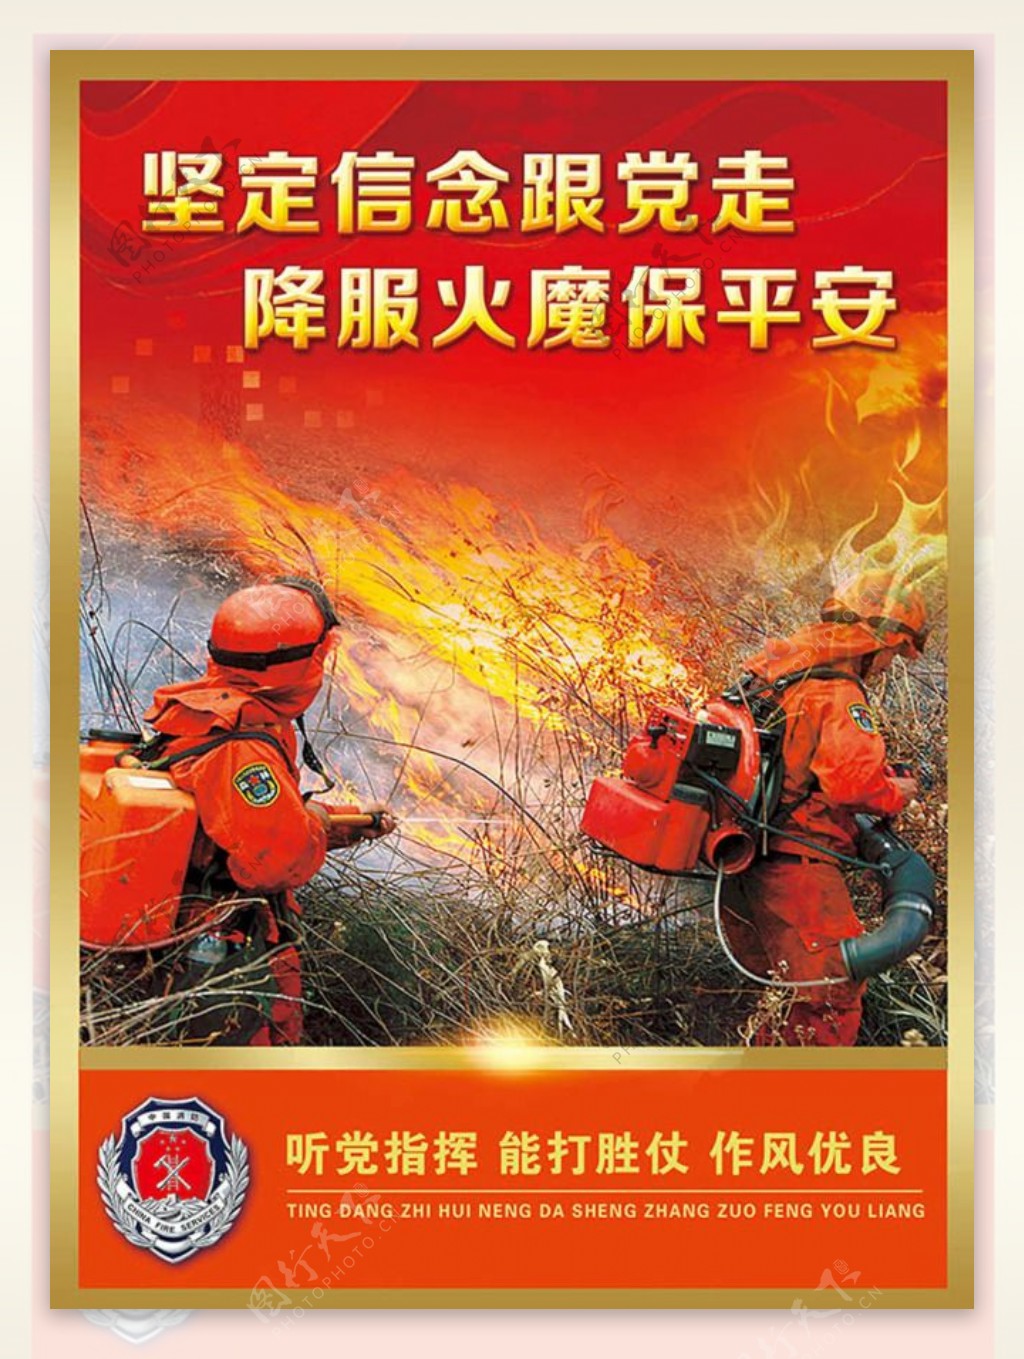 消防大队消防宣传标语展板图片psd素材